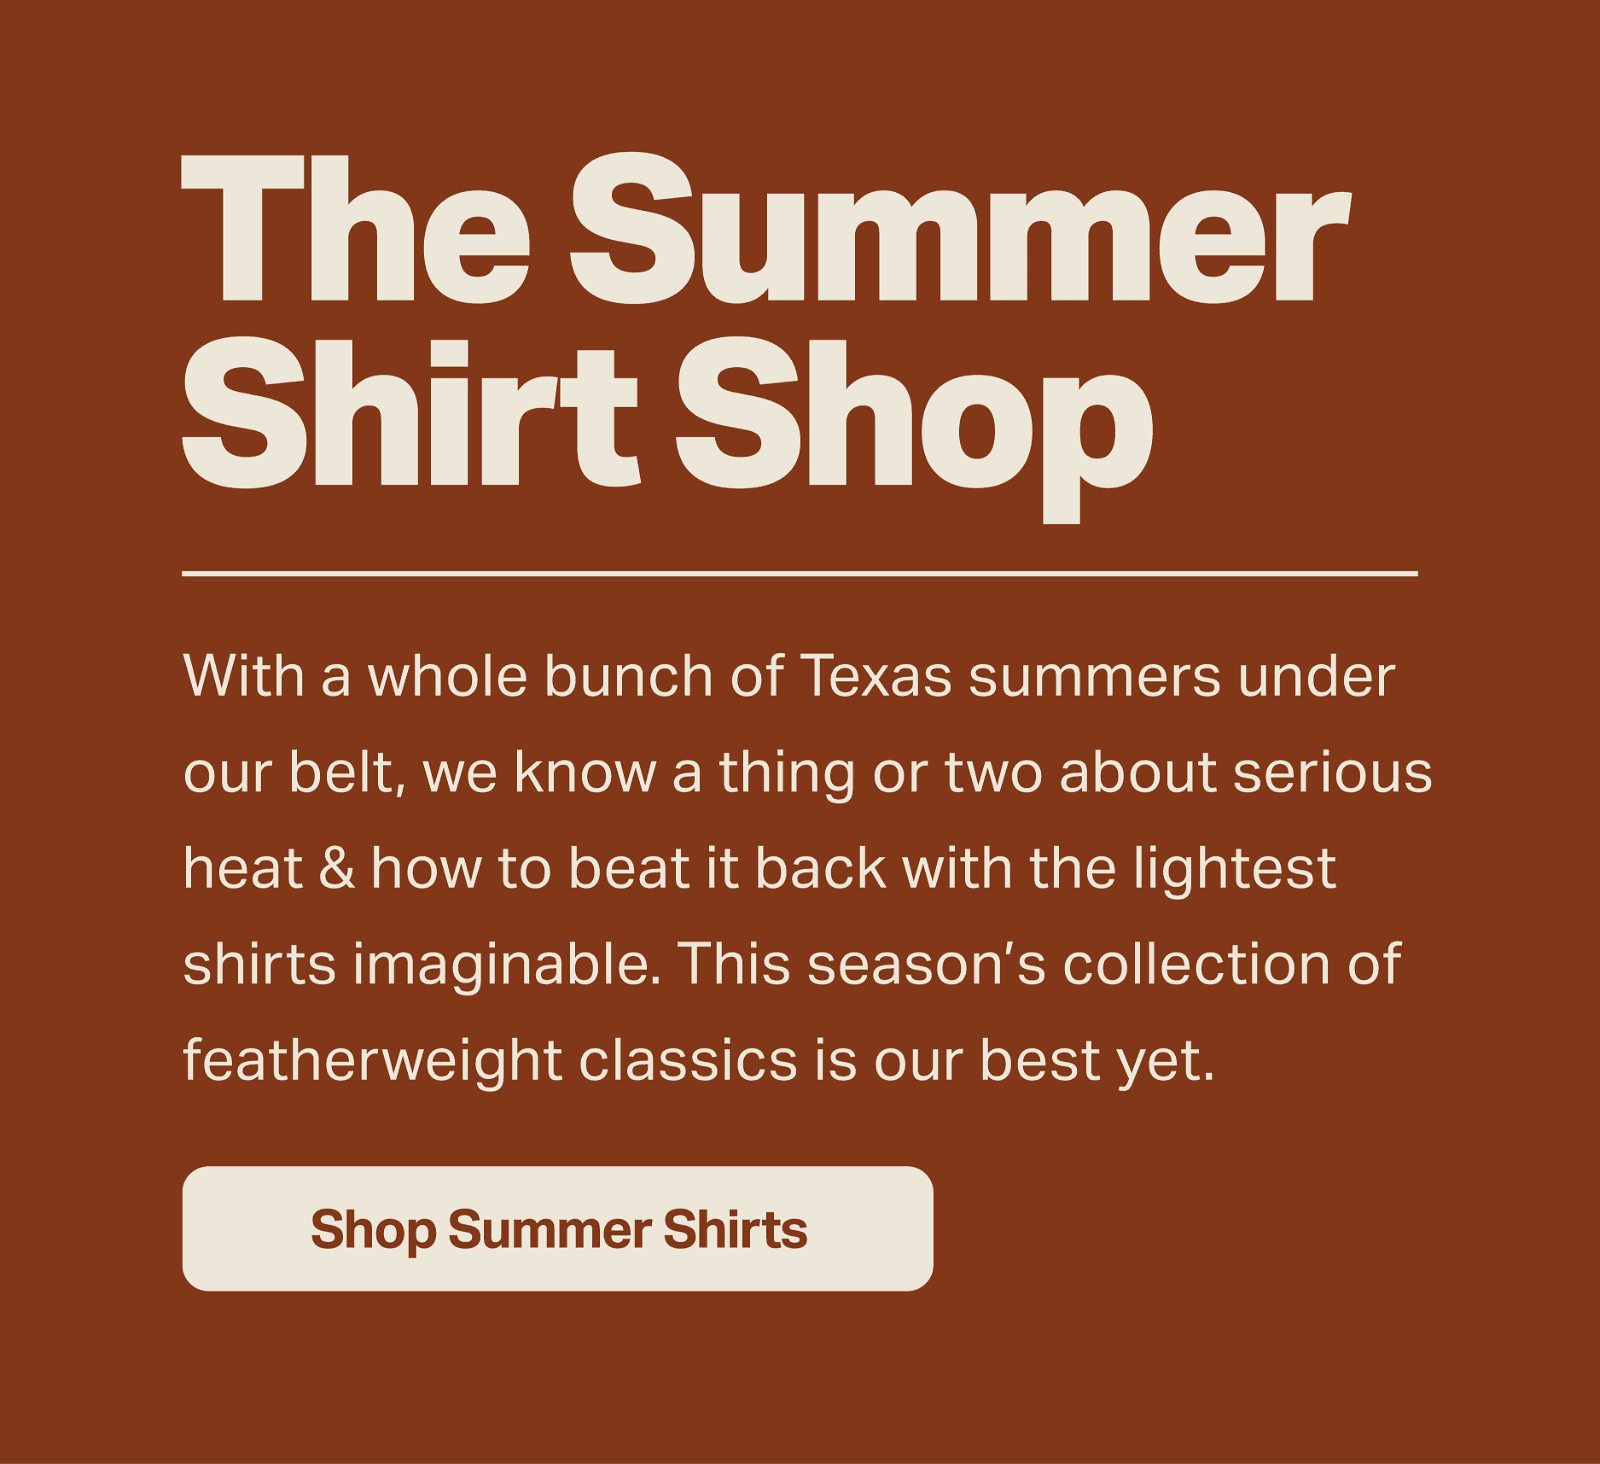 The Summer Shirt Shop